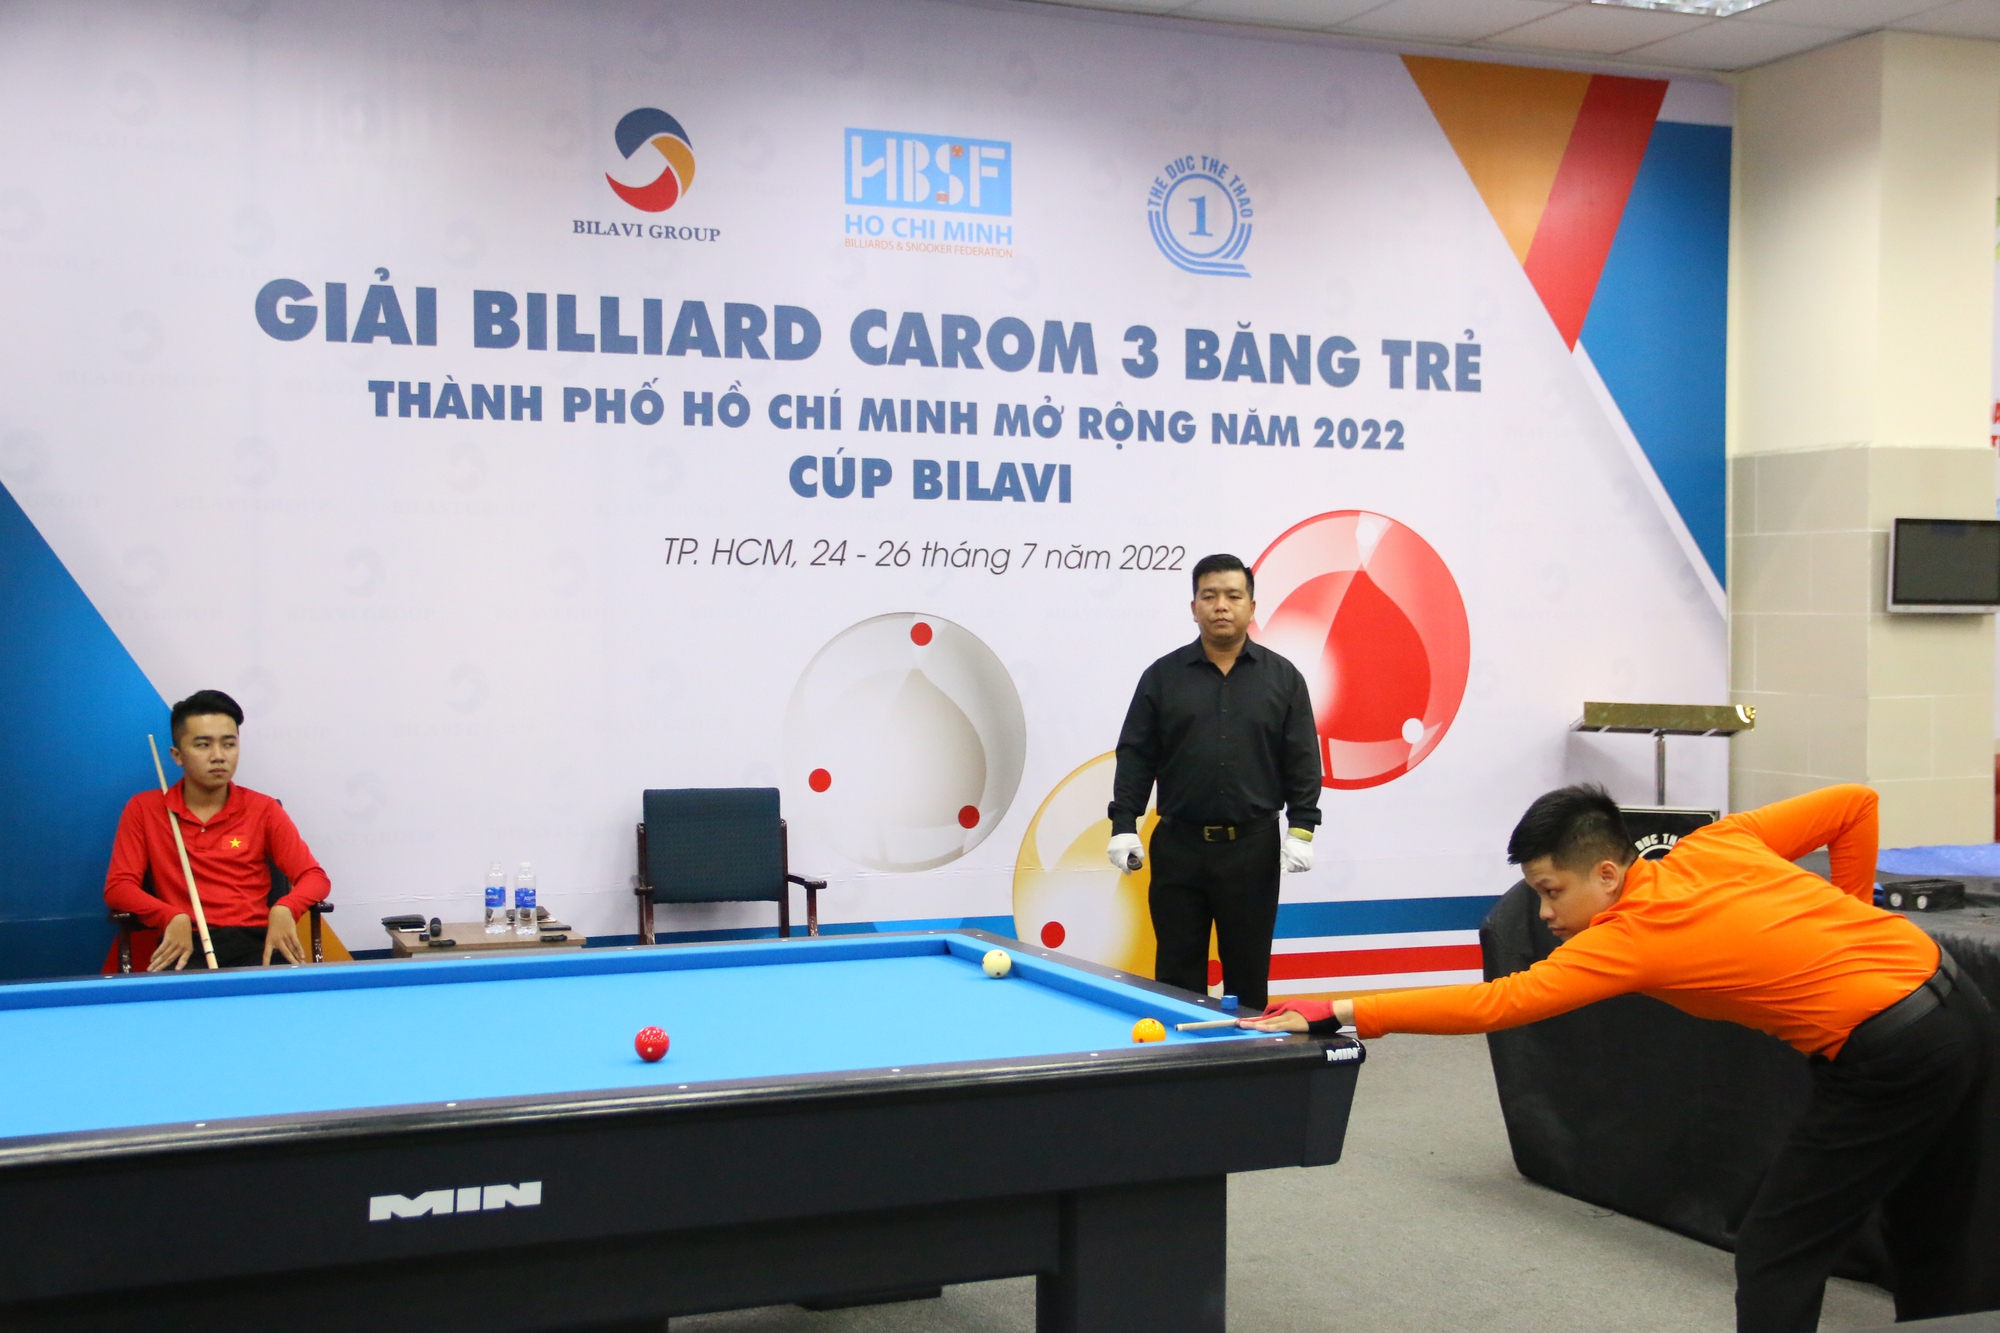 Hai cơ thủ gen Z giành suất dự Giải Vô địch billiards trẻ thế giới - Ảnh 2.